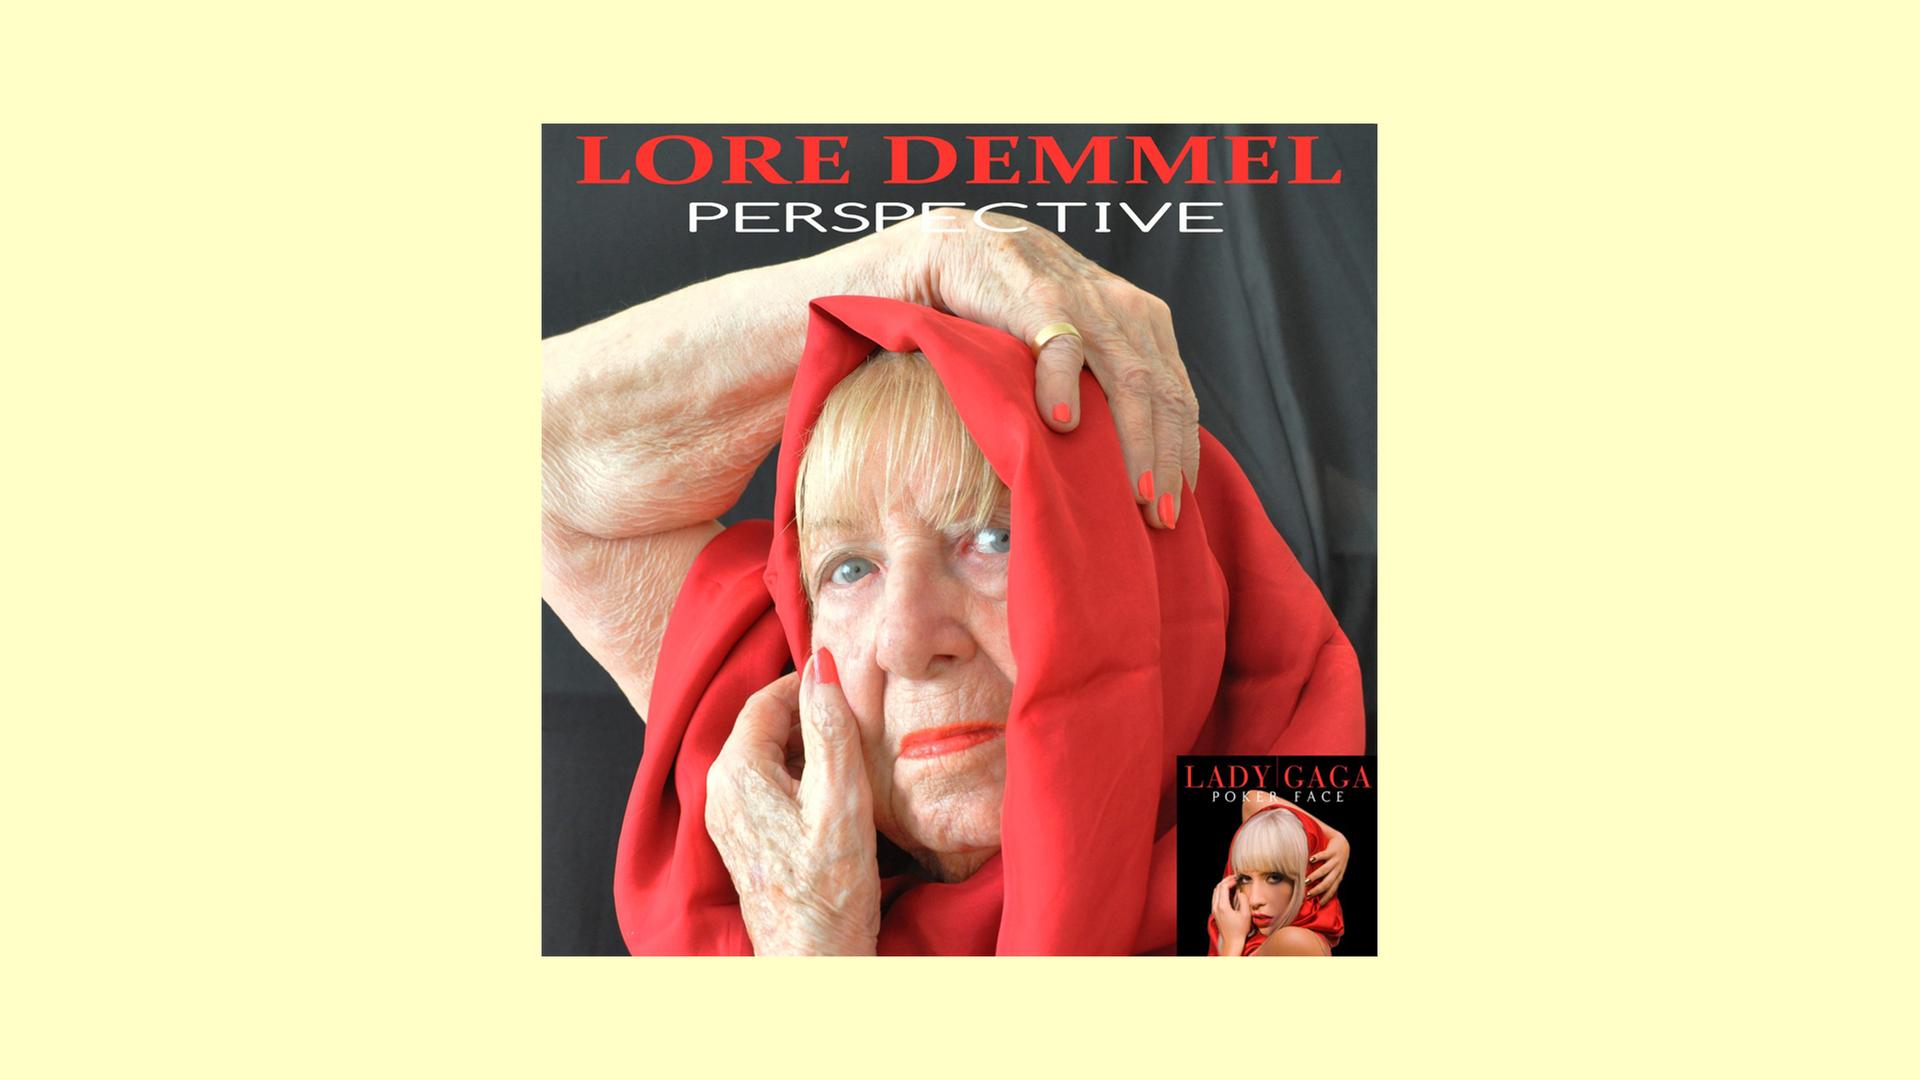 Eine ältere Frau ahmt das Bild des Plattencovers von Lady Gagas "Poker Face" nach: Sie hat sich ein rotes Tuch um den Kopf gewickelt und schaut selbstbewusst in die Kamera.